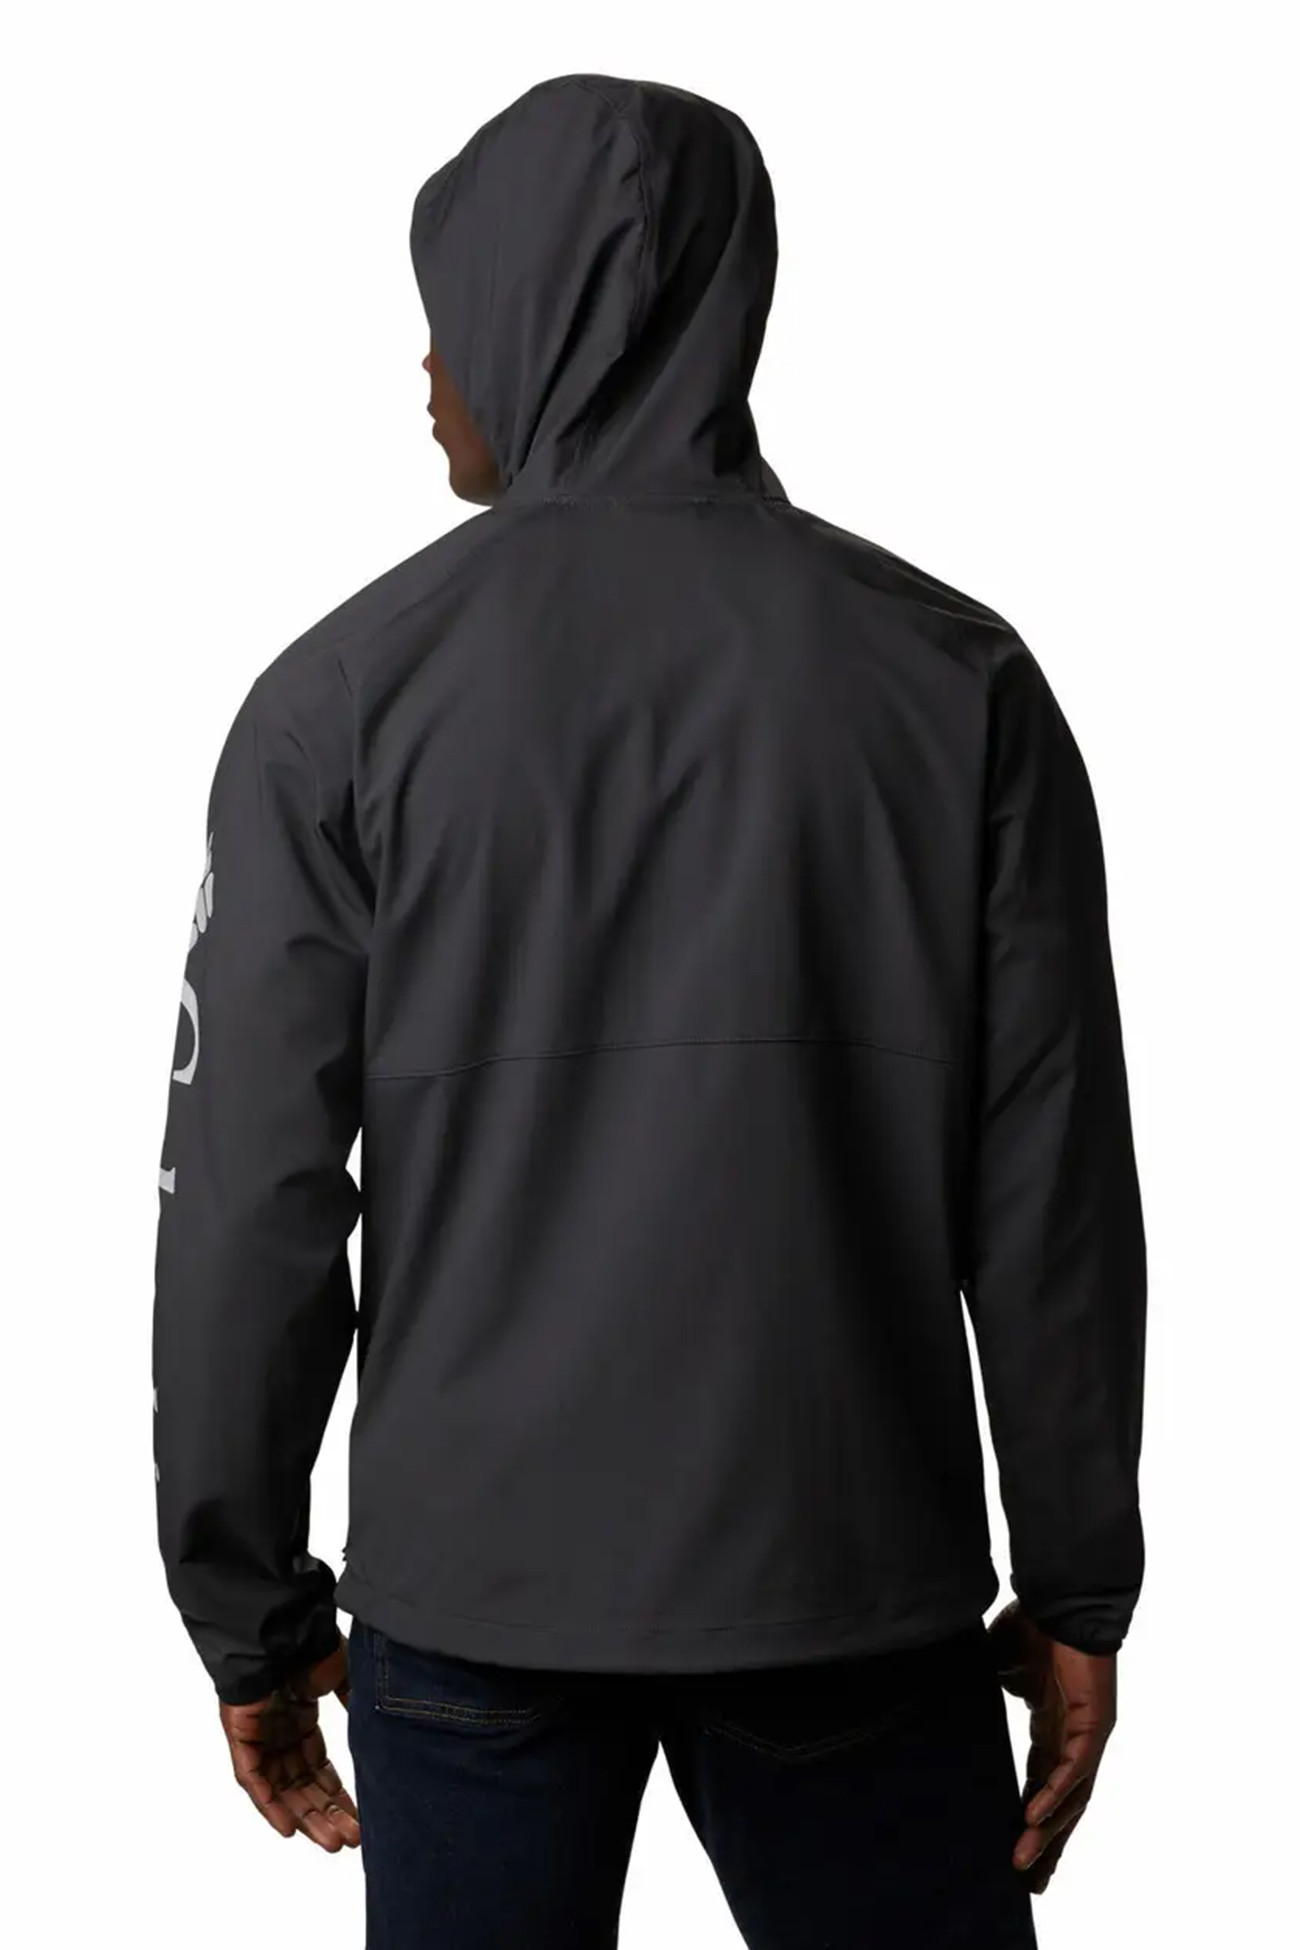 Ветровка мужская Columbia Panther Creek ™ Jacket черная 1840711-011 изображение 5